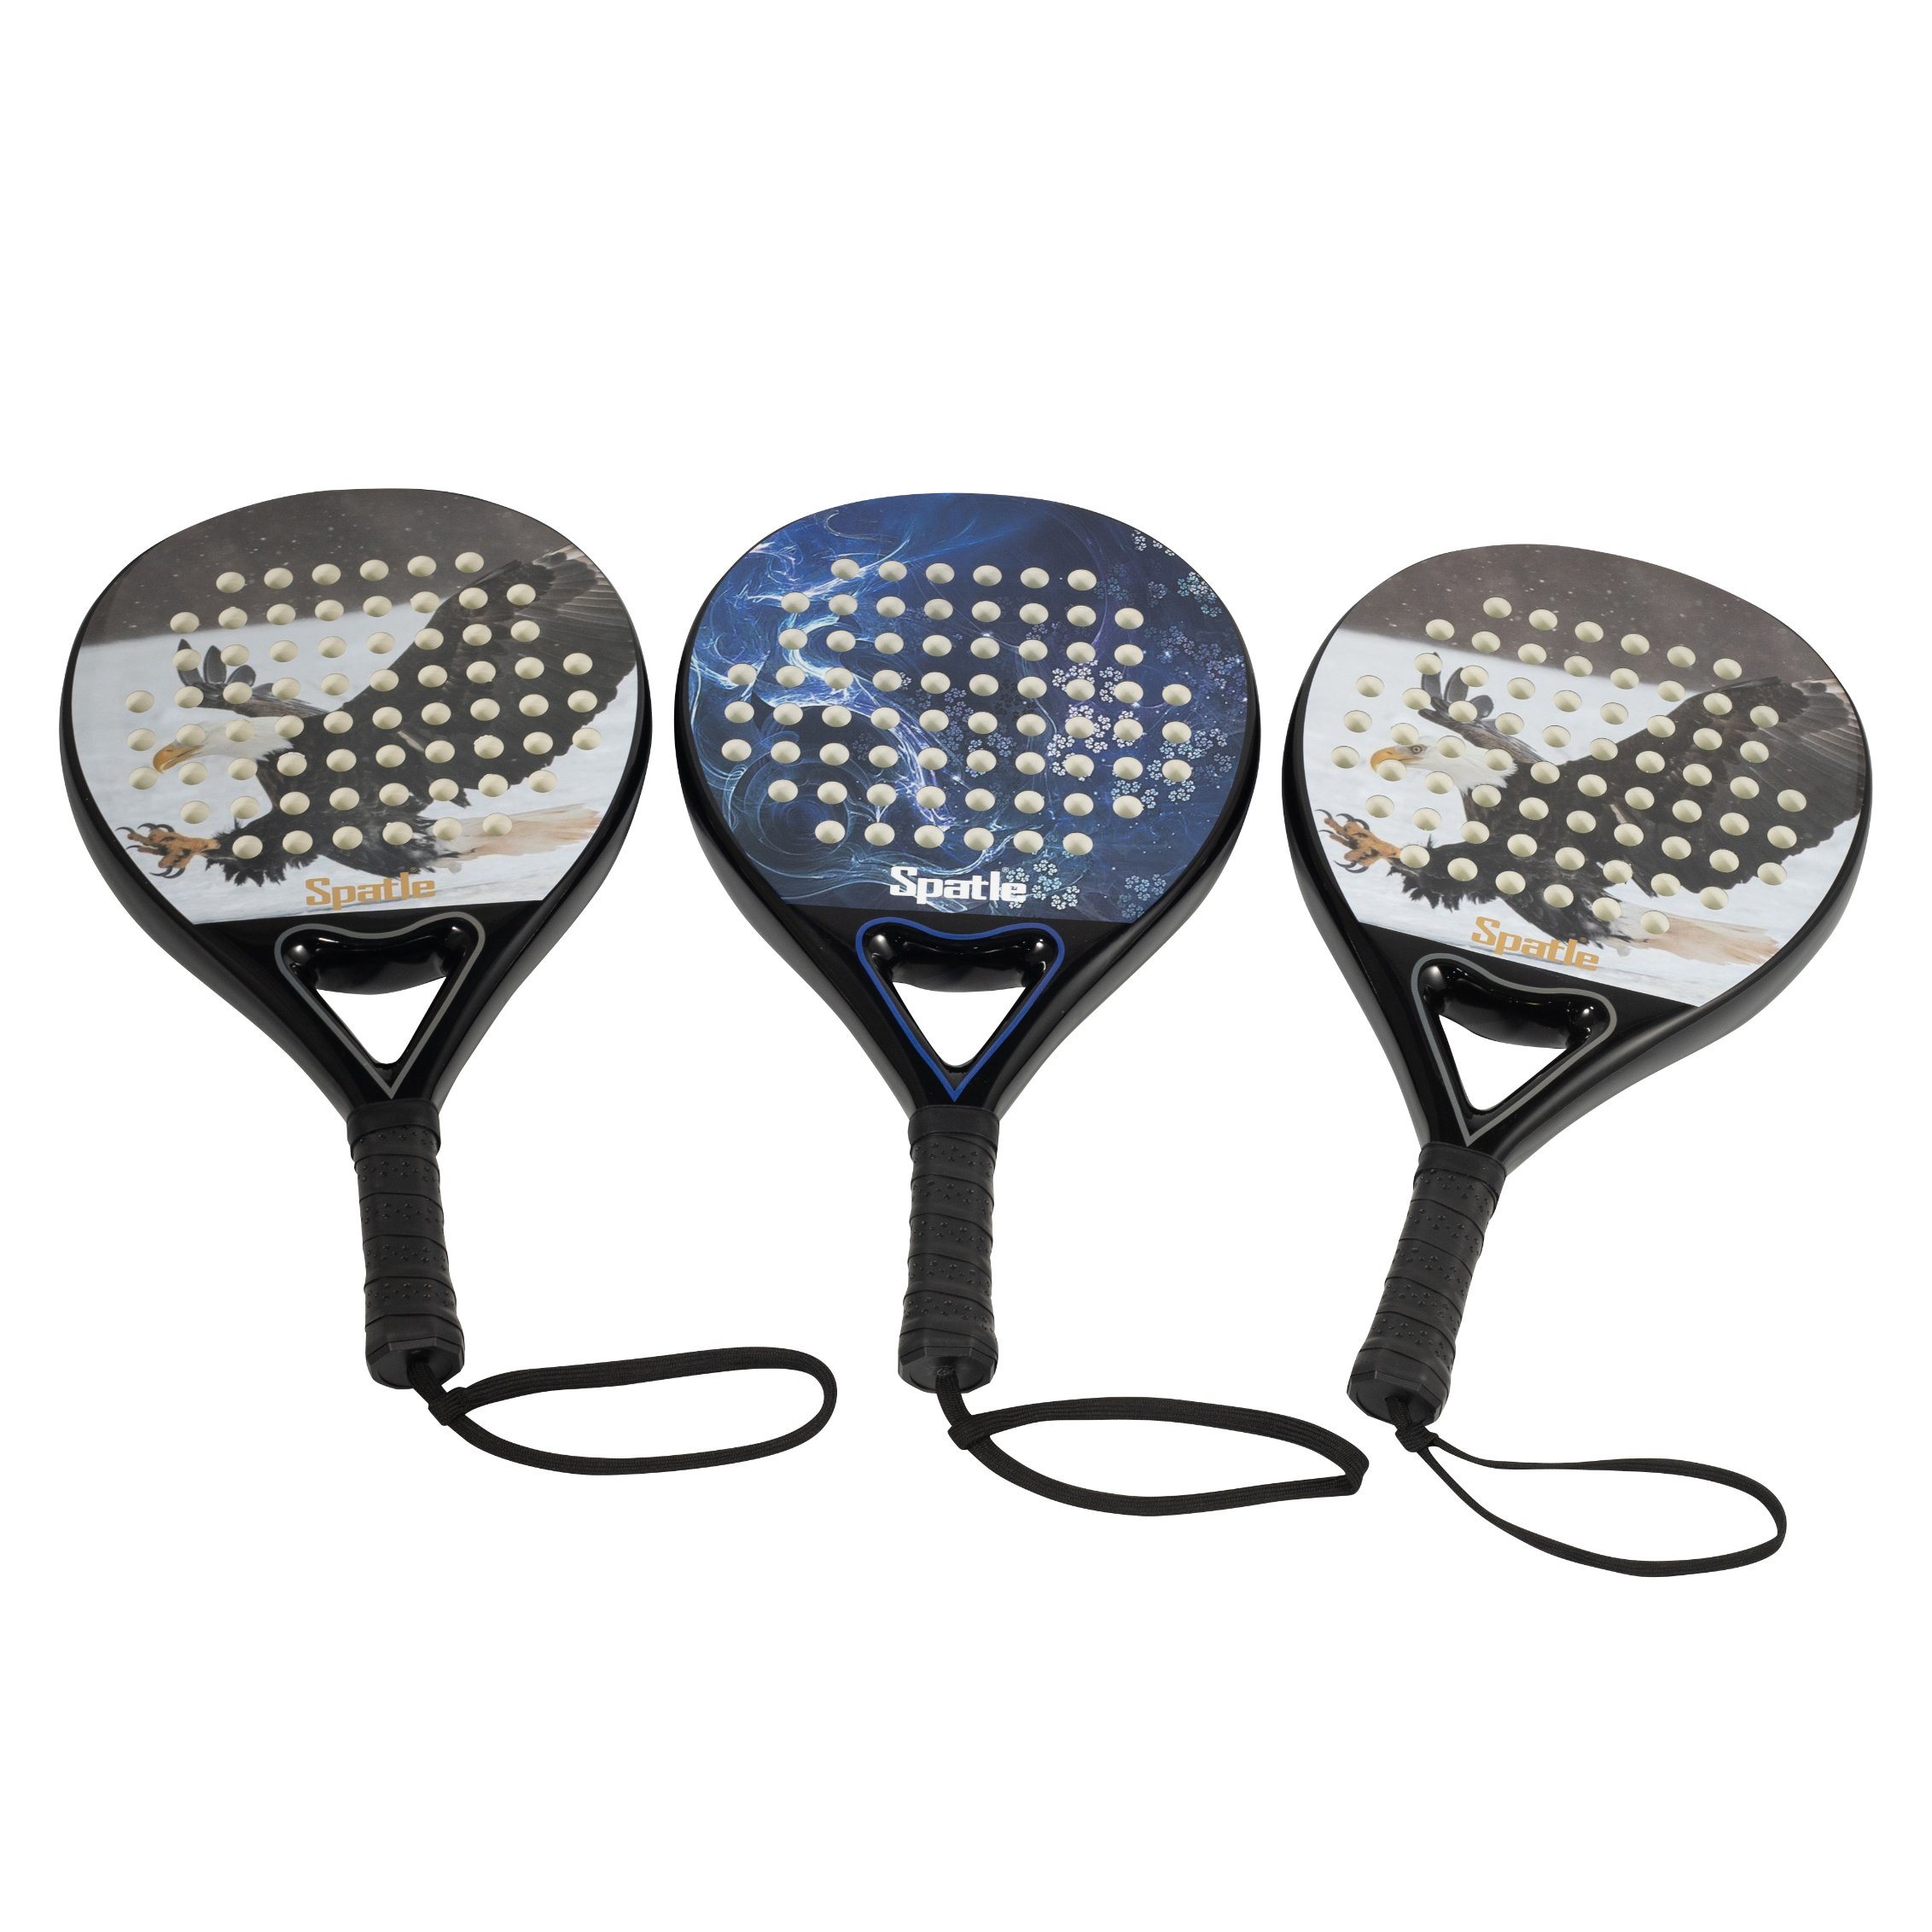 Benutzerdefinierte OEM Carbon Paddelschläger Paddel-Tennisschläger